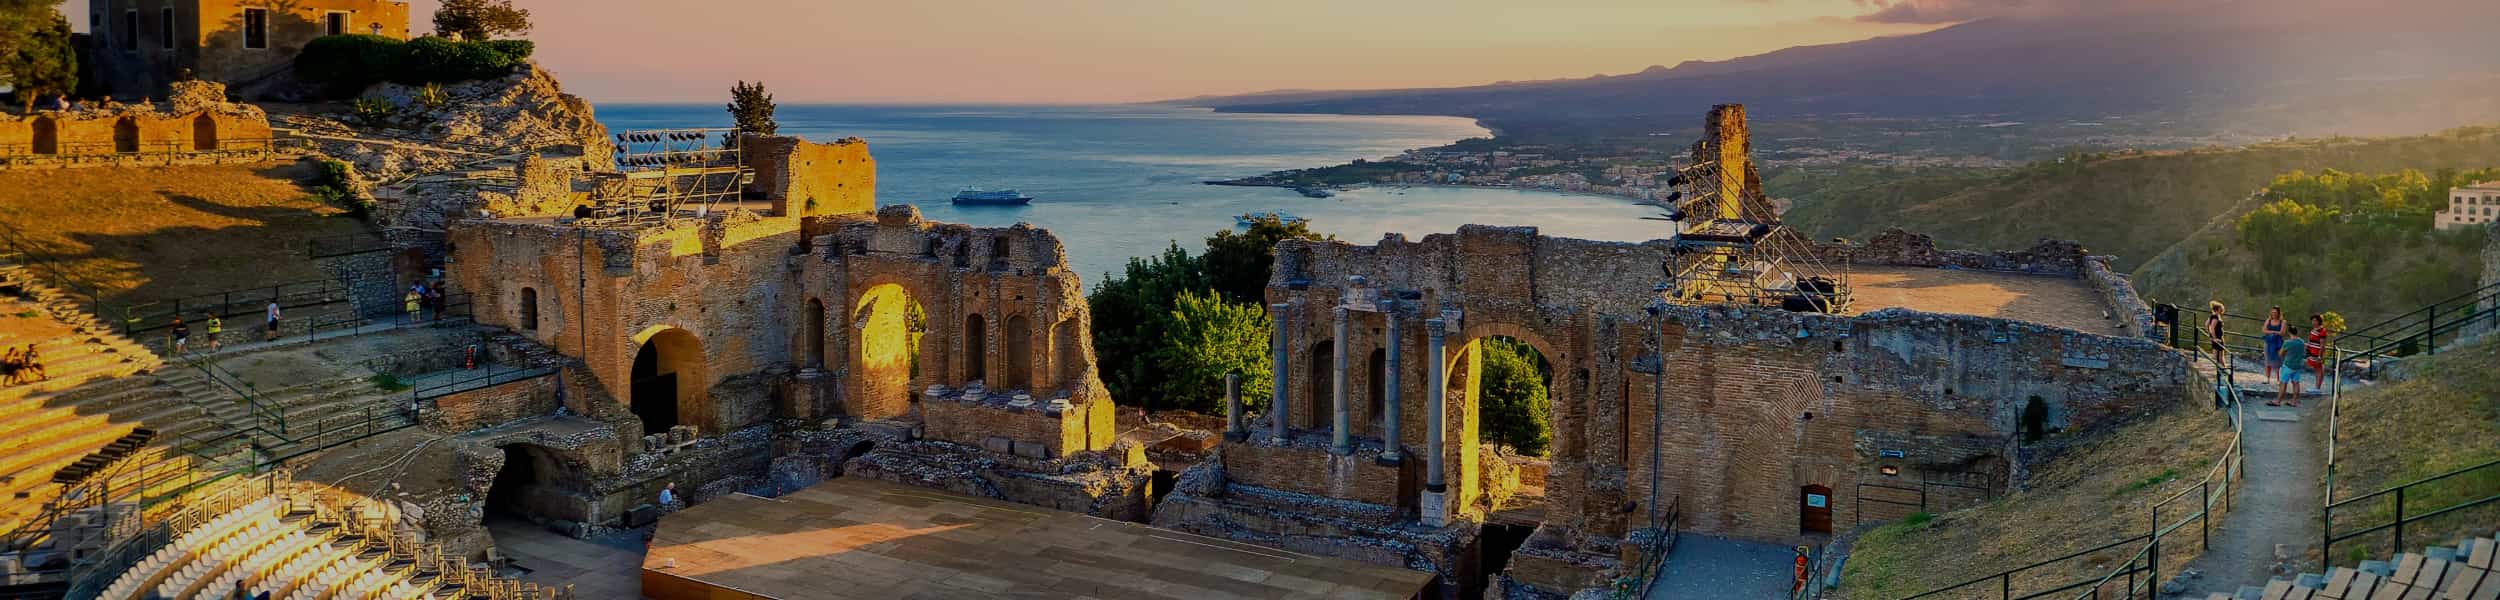 Sicilia orientale in 5 giorni